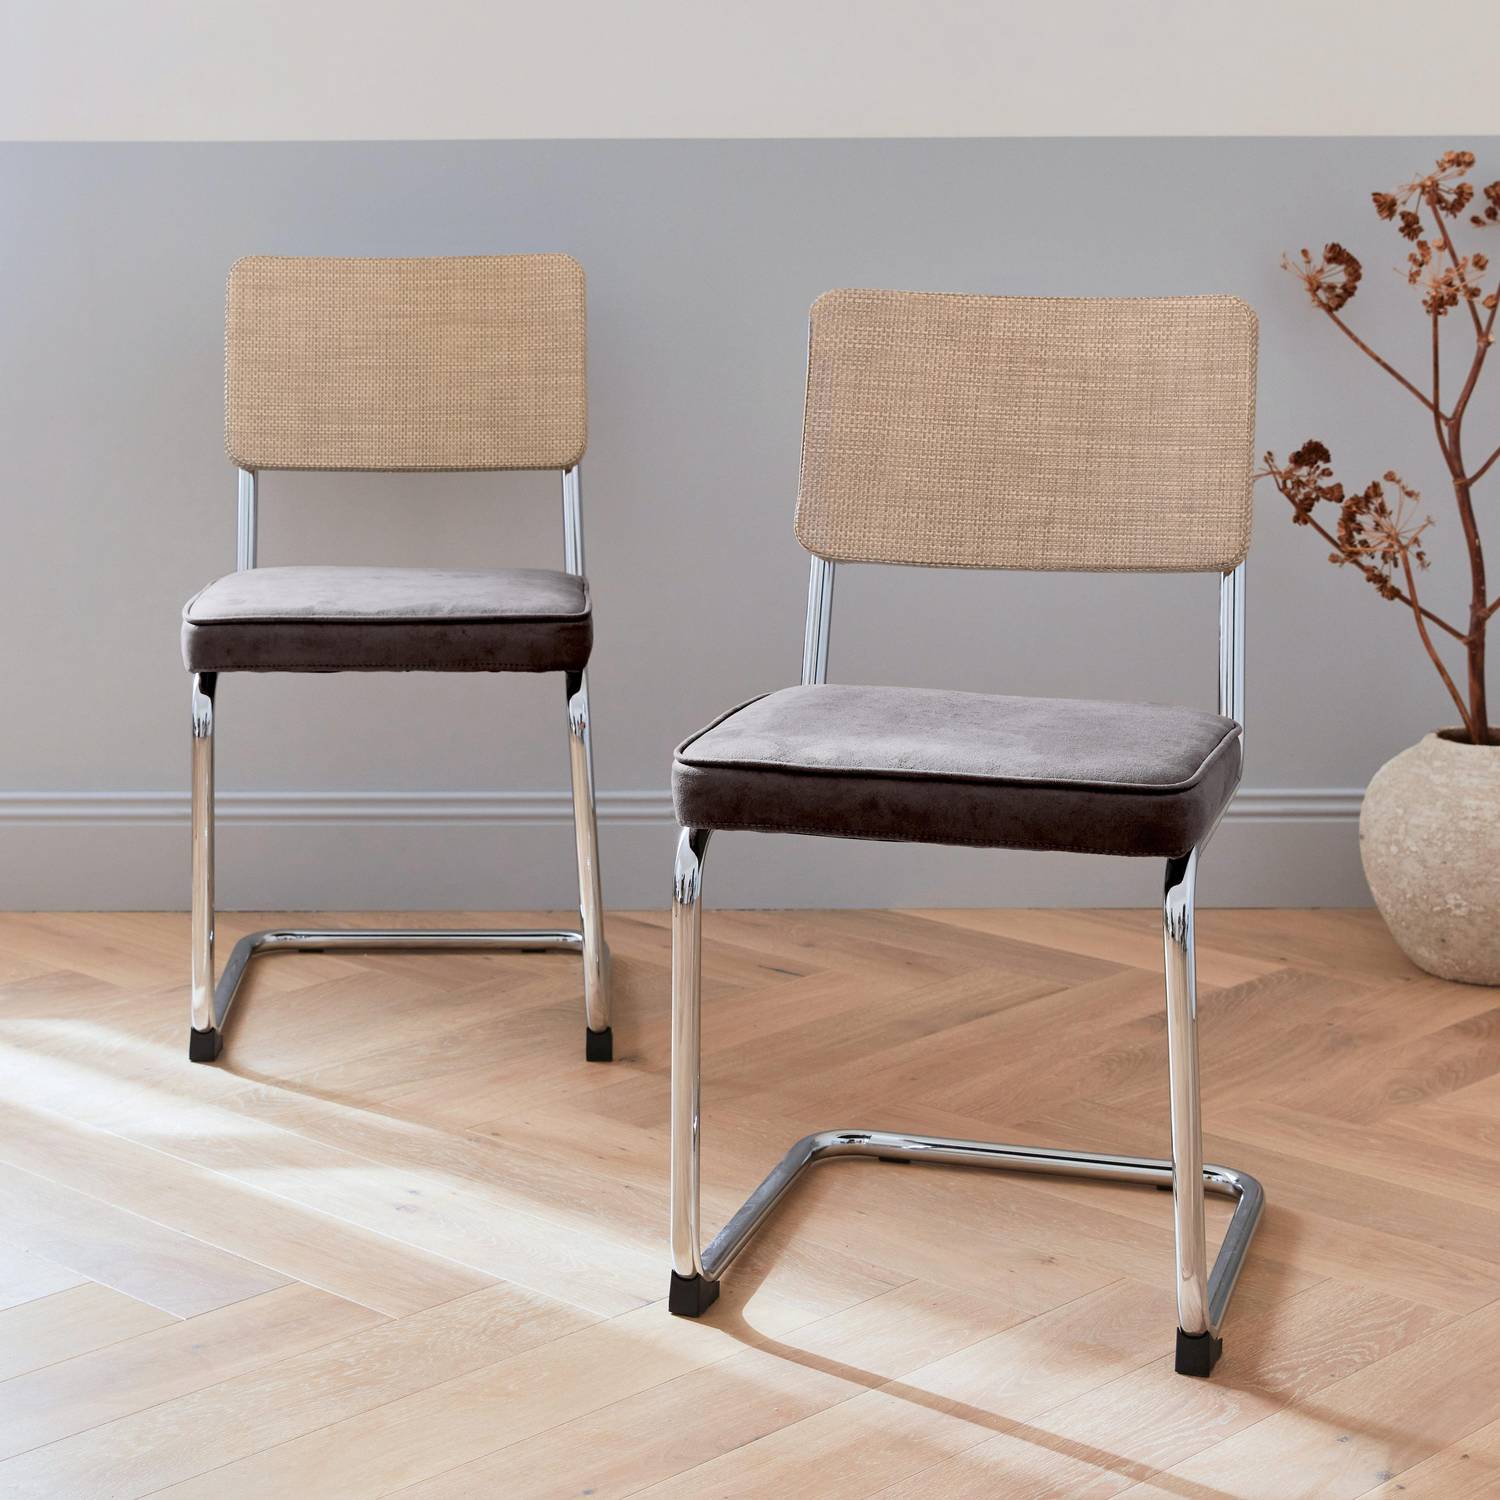 2 cadeiras cantilever - Maja - tecido preto e resina com efeito de vime, 46 x 54,5 x 84,5 cm Photo2